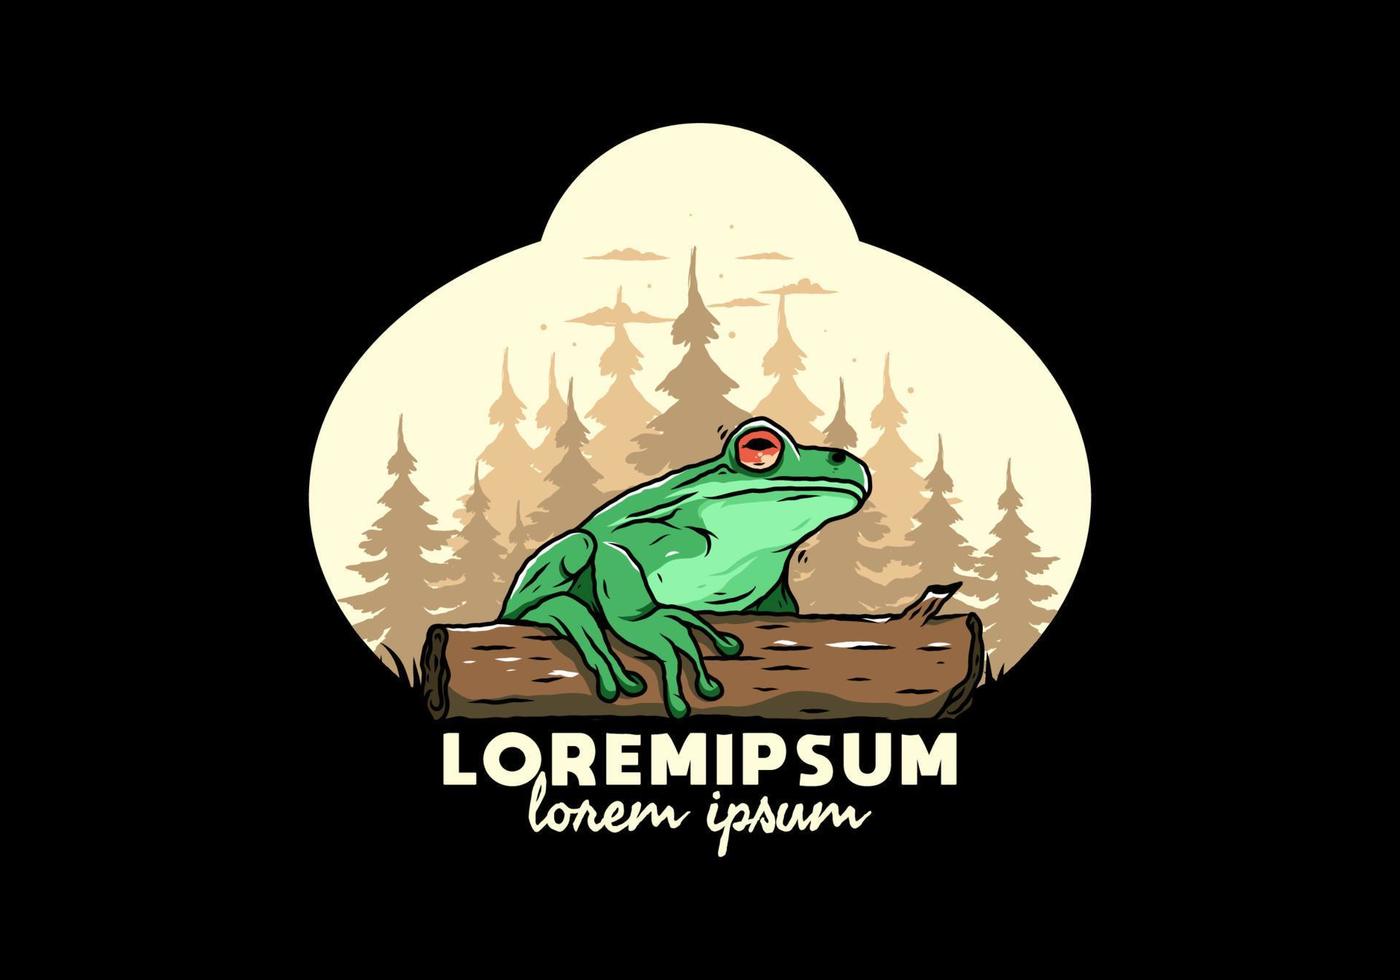 big frog perched on a log illustration vector